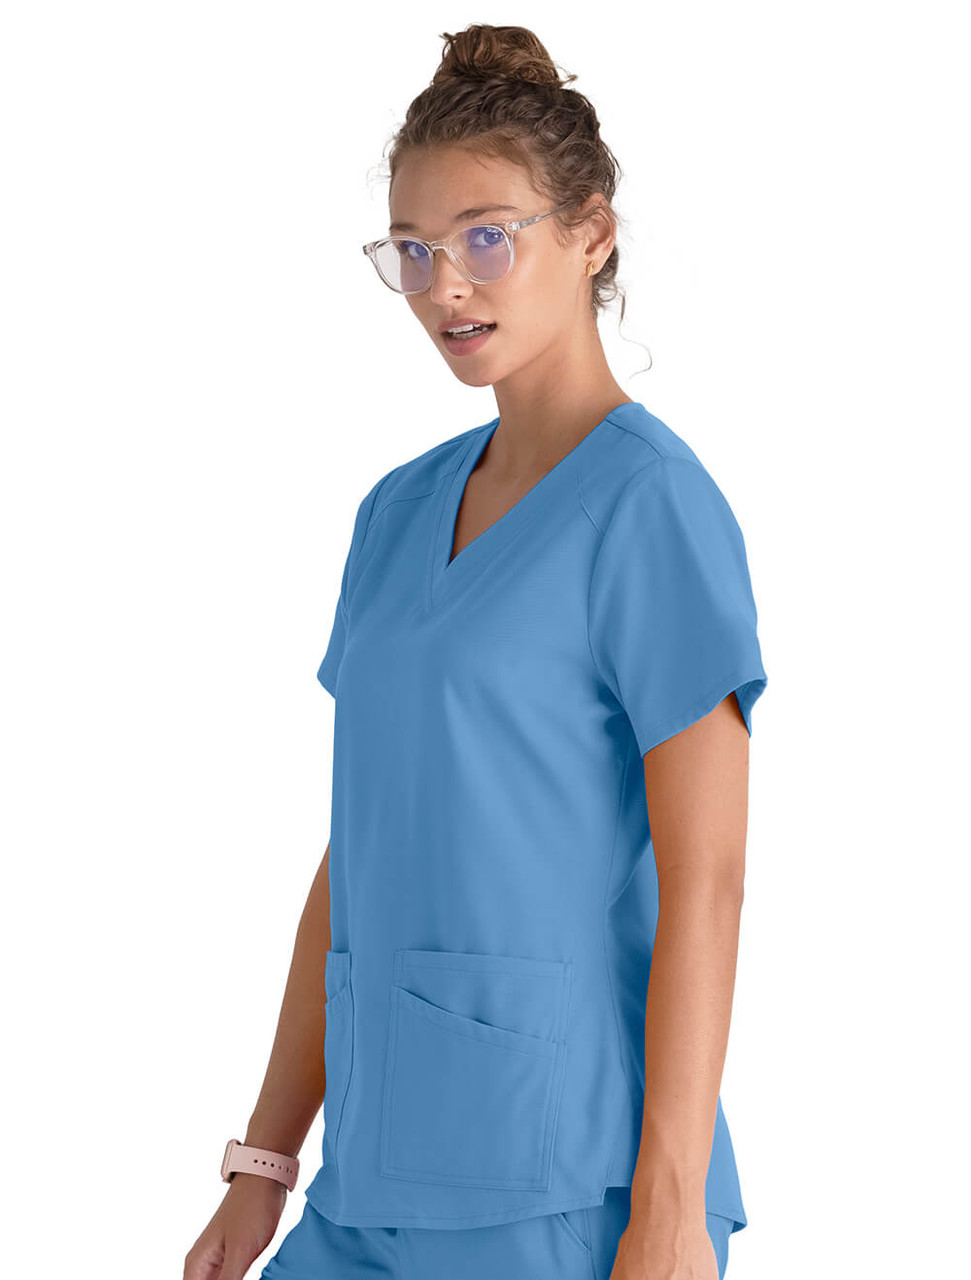 Womens Stretch Scrub Top, Healthcare Uniforms